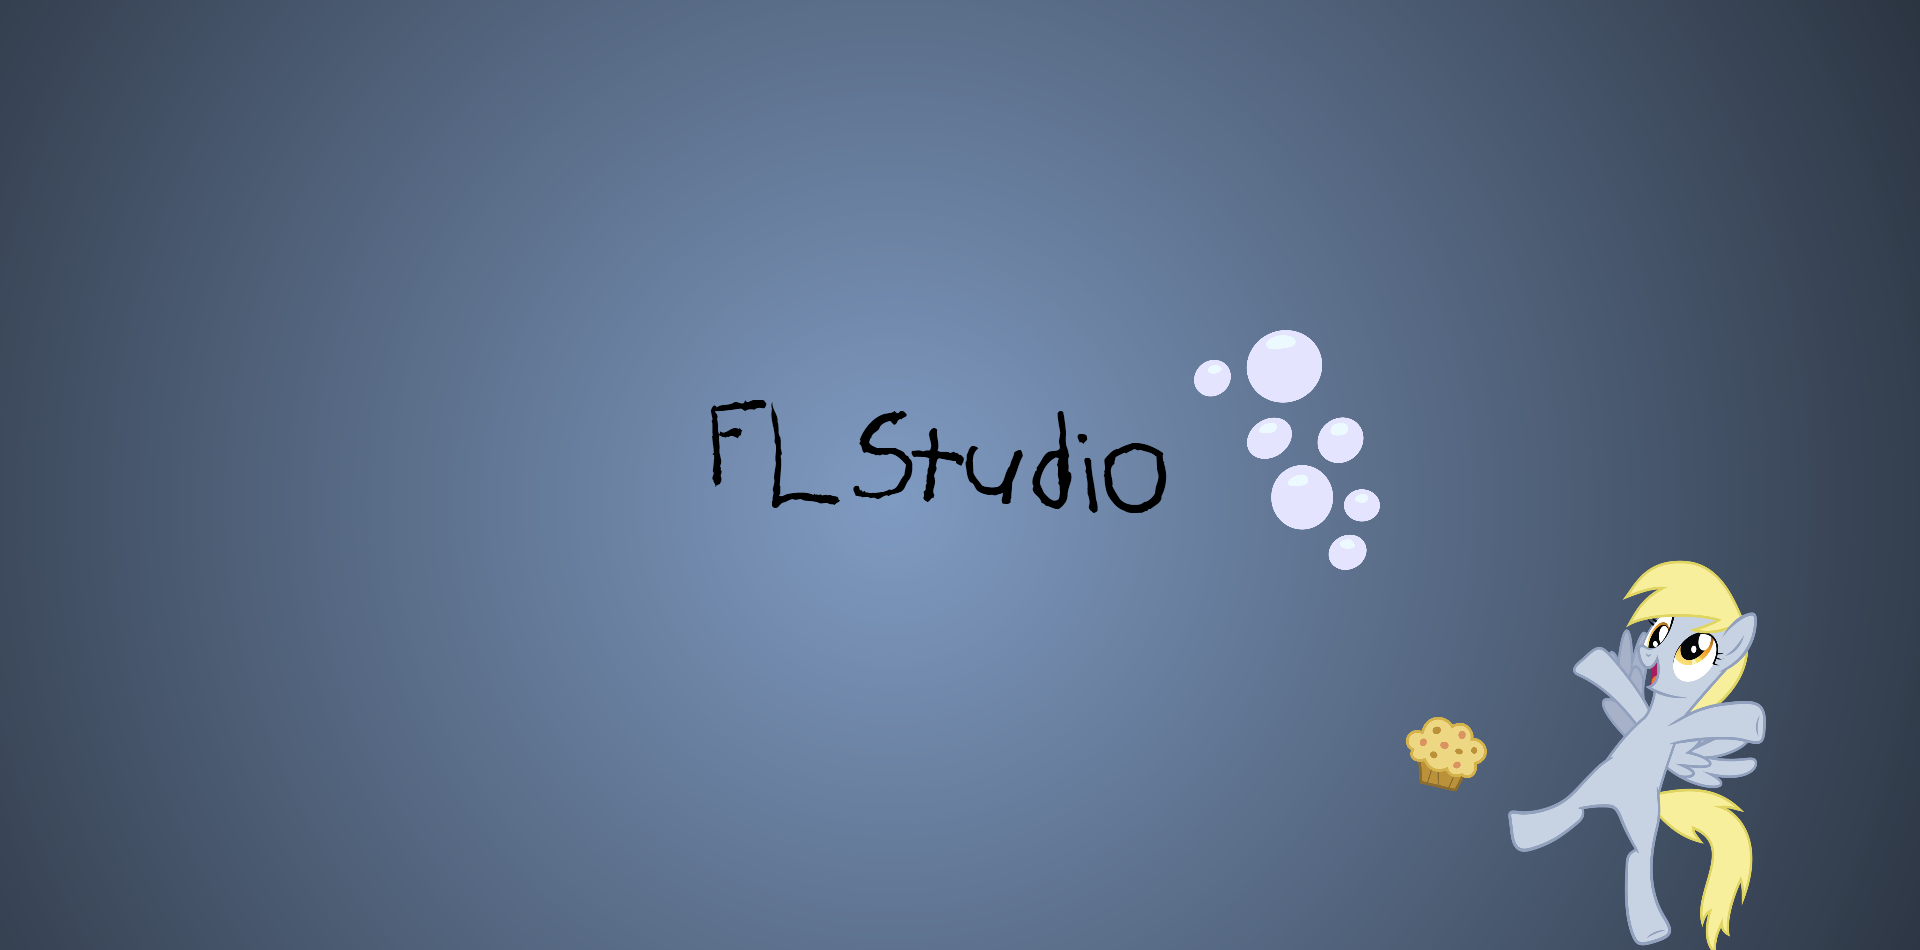 FL studio Derpy background by ch0pis on DeviantArt